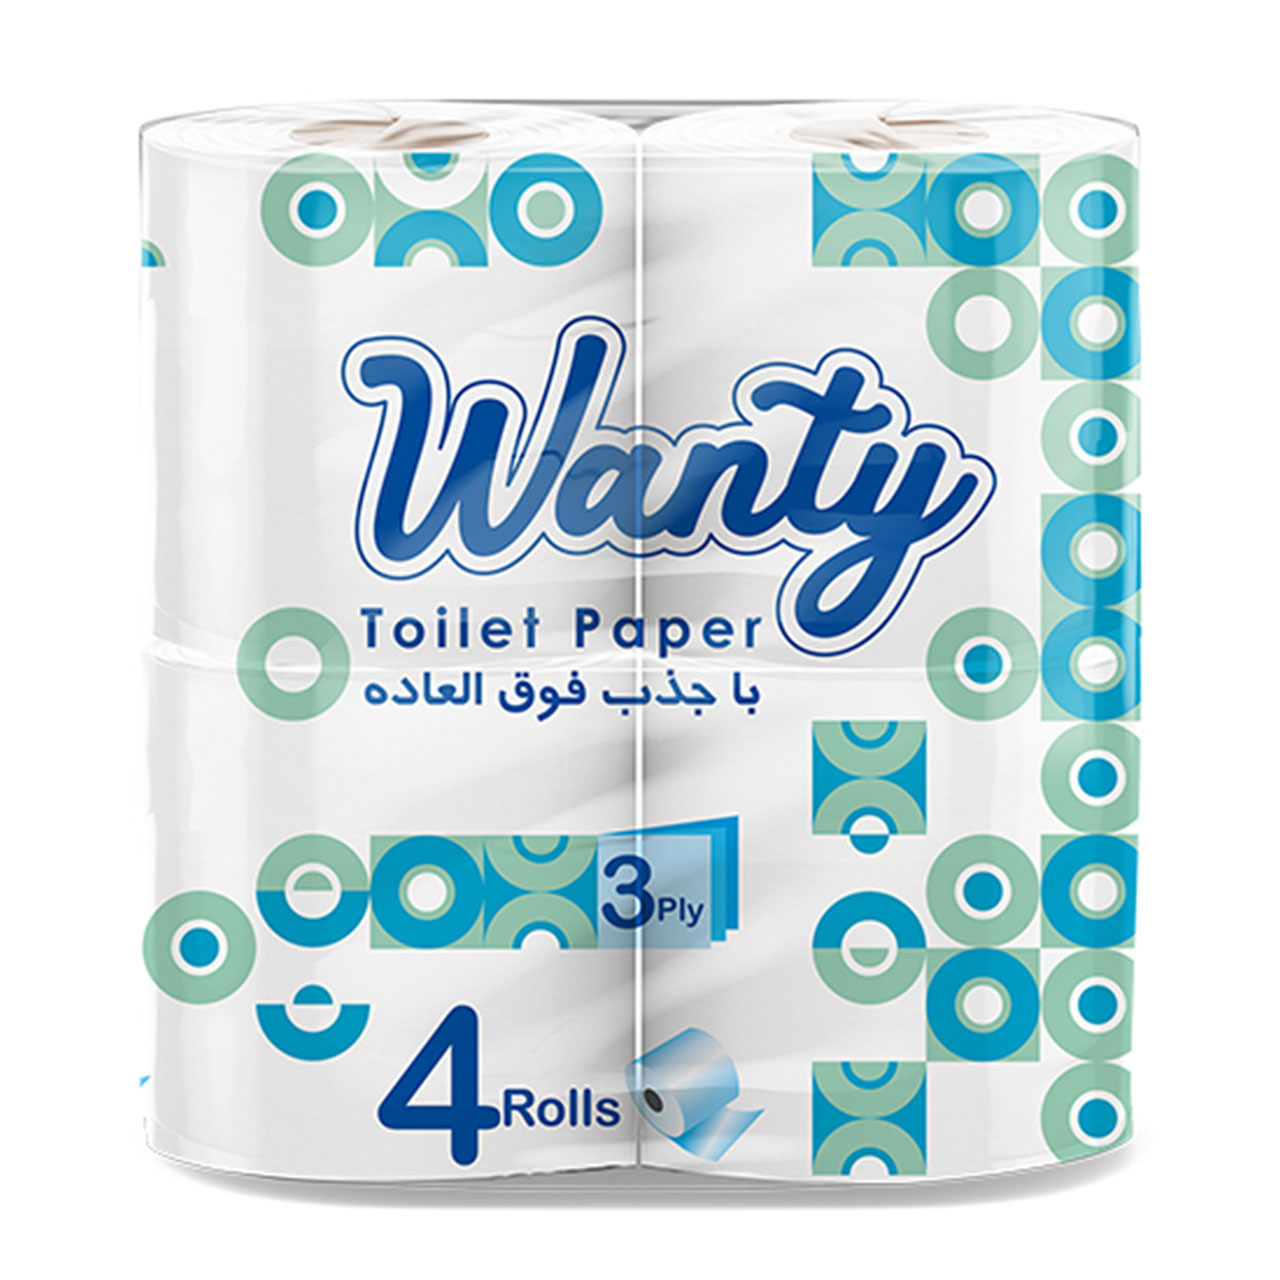  دستمال توالت ونتی مدل Three-ply بسته 4 عددی